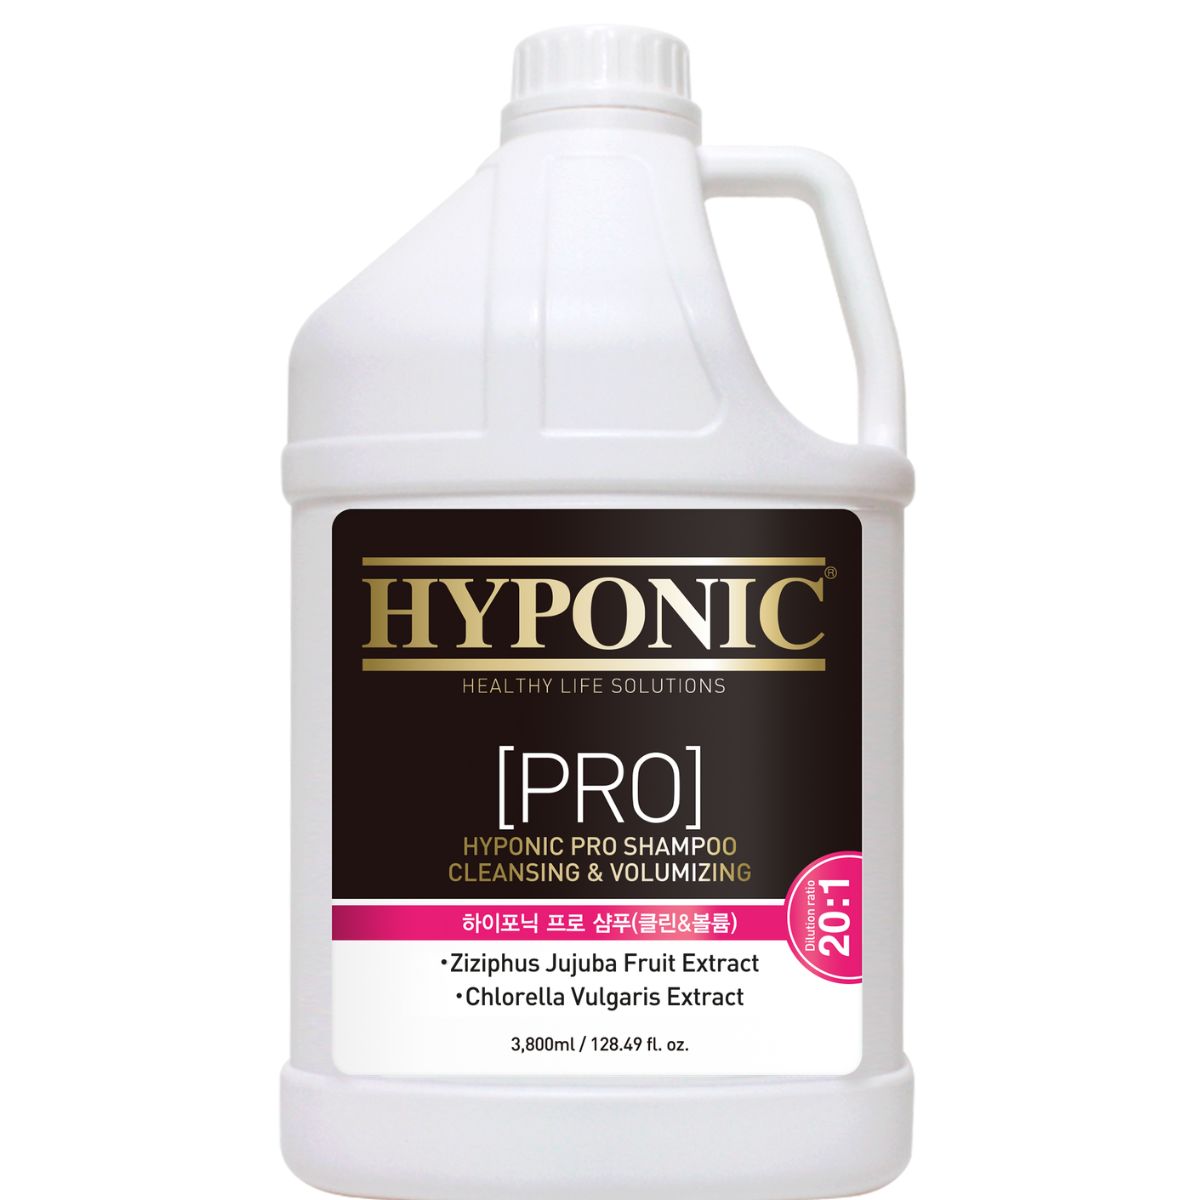 Hyponic Pro Shampoo, Cleansing & Volumizing